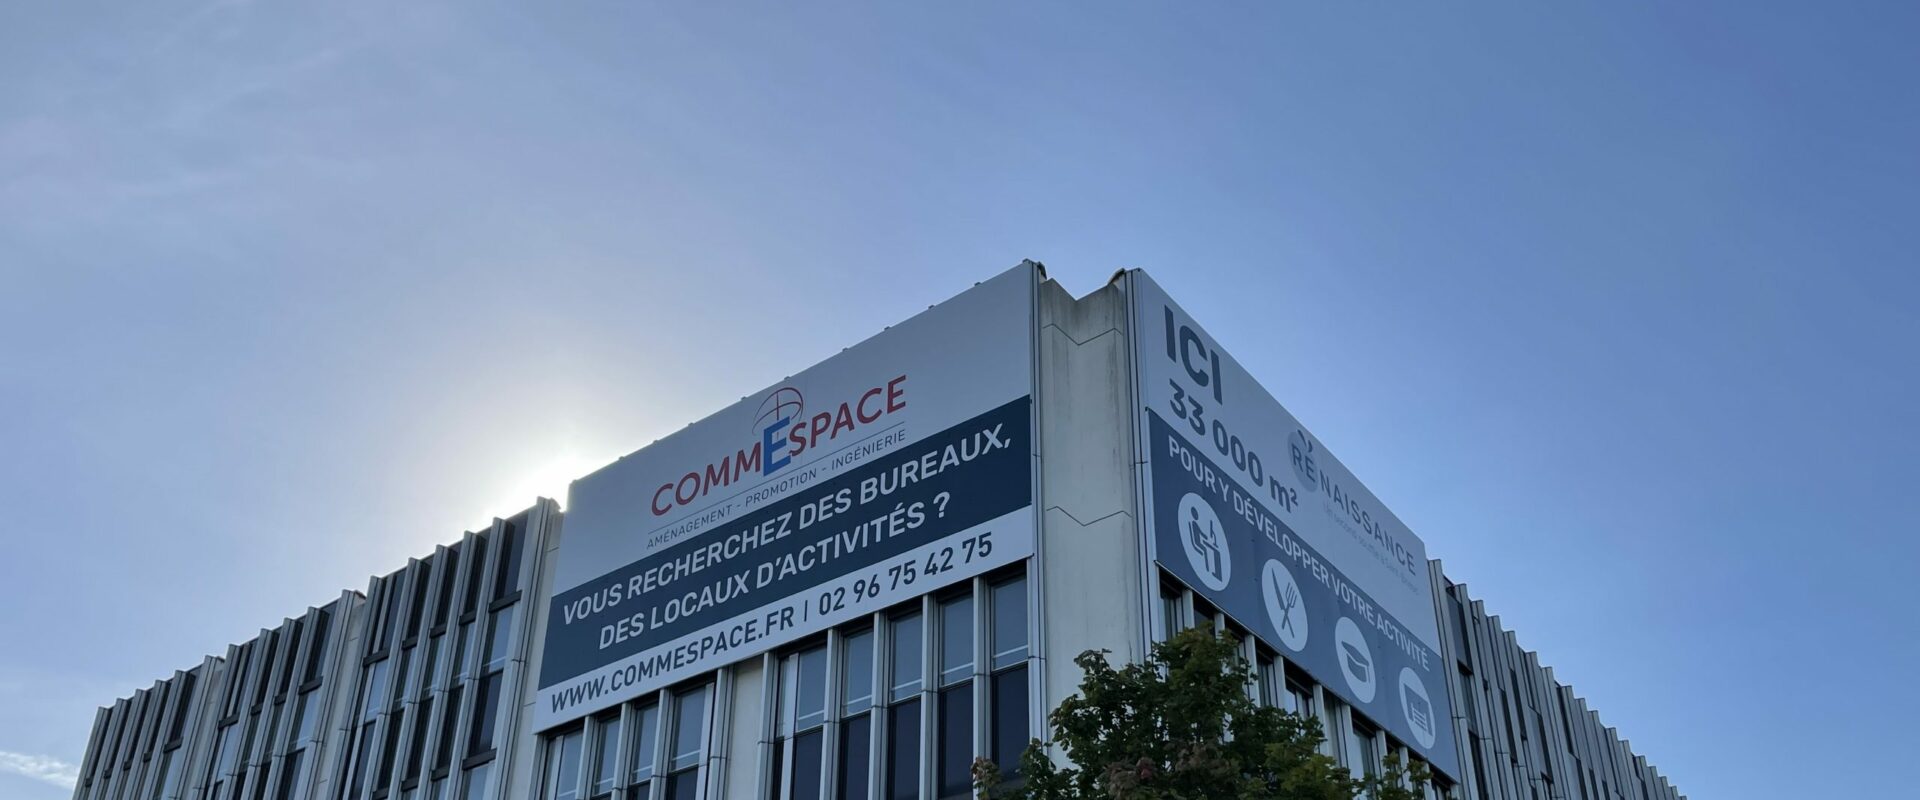 Commespace poursuit son développement et investit 10M€ dans l'ancien site Enedis